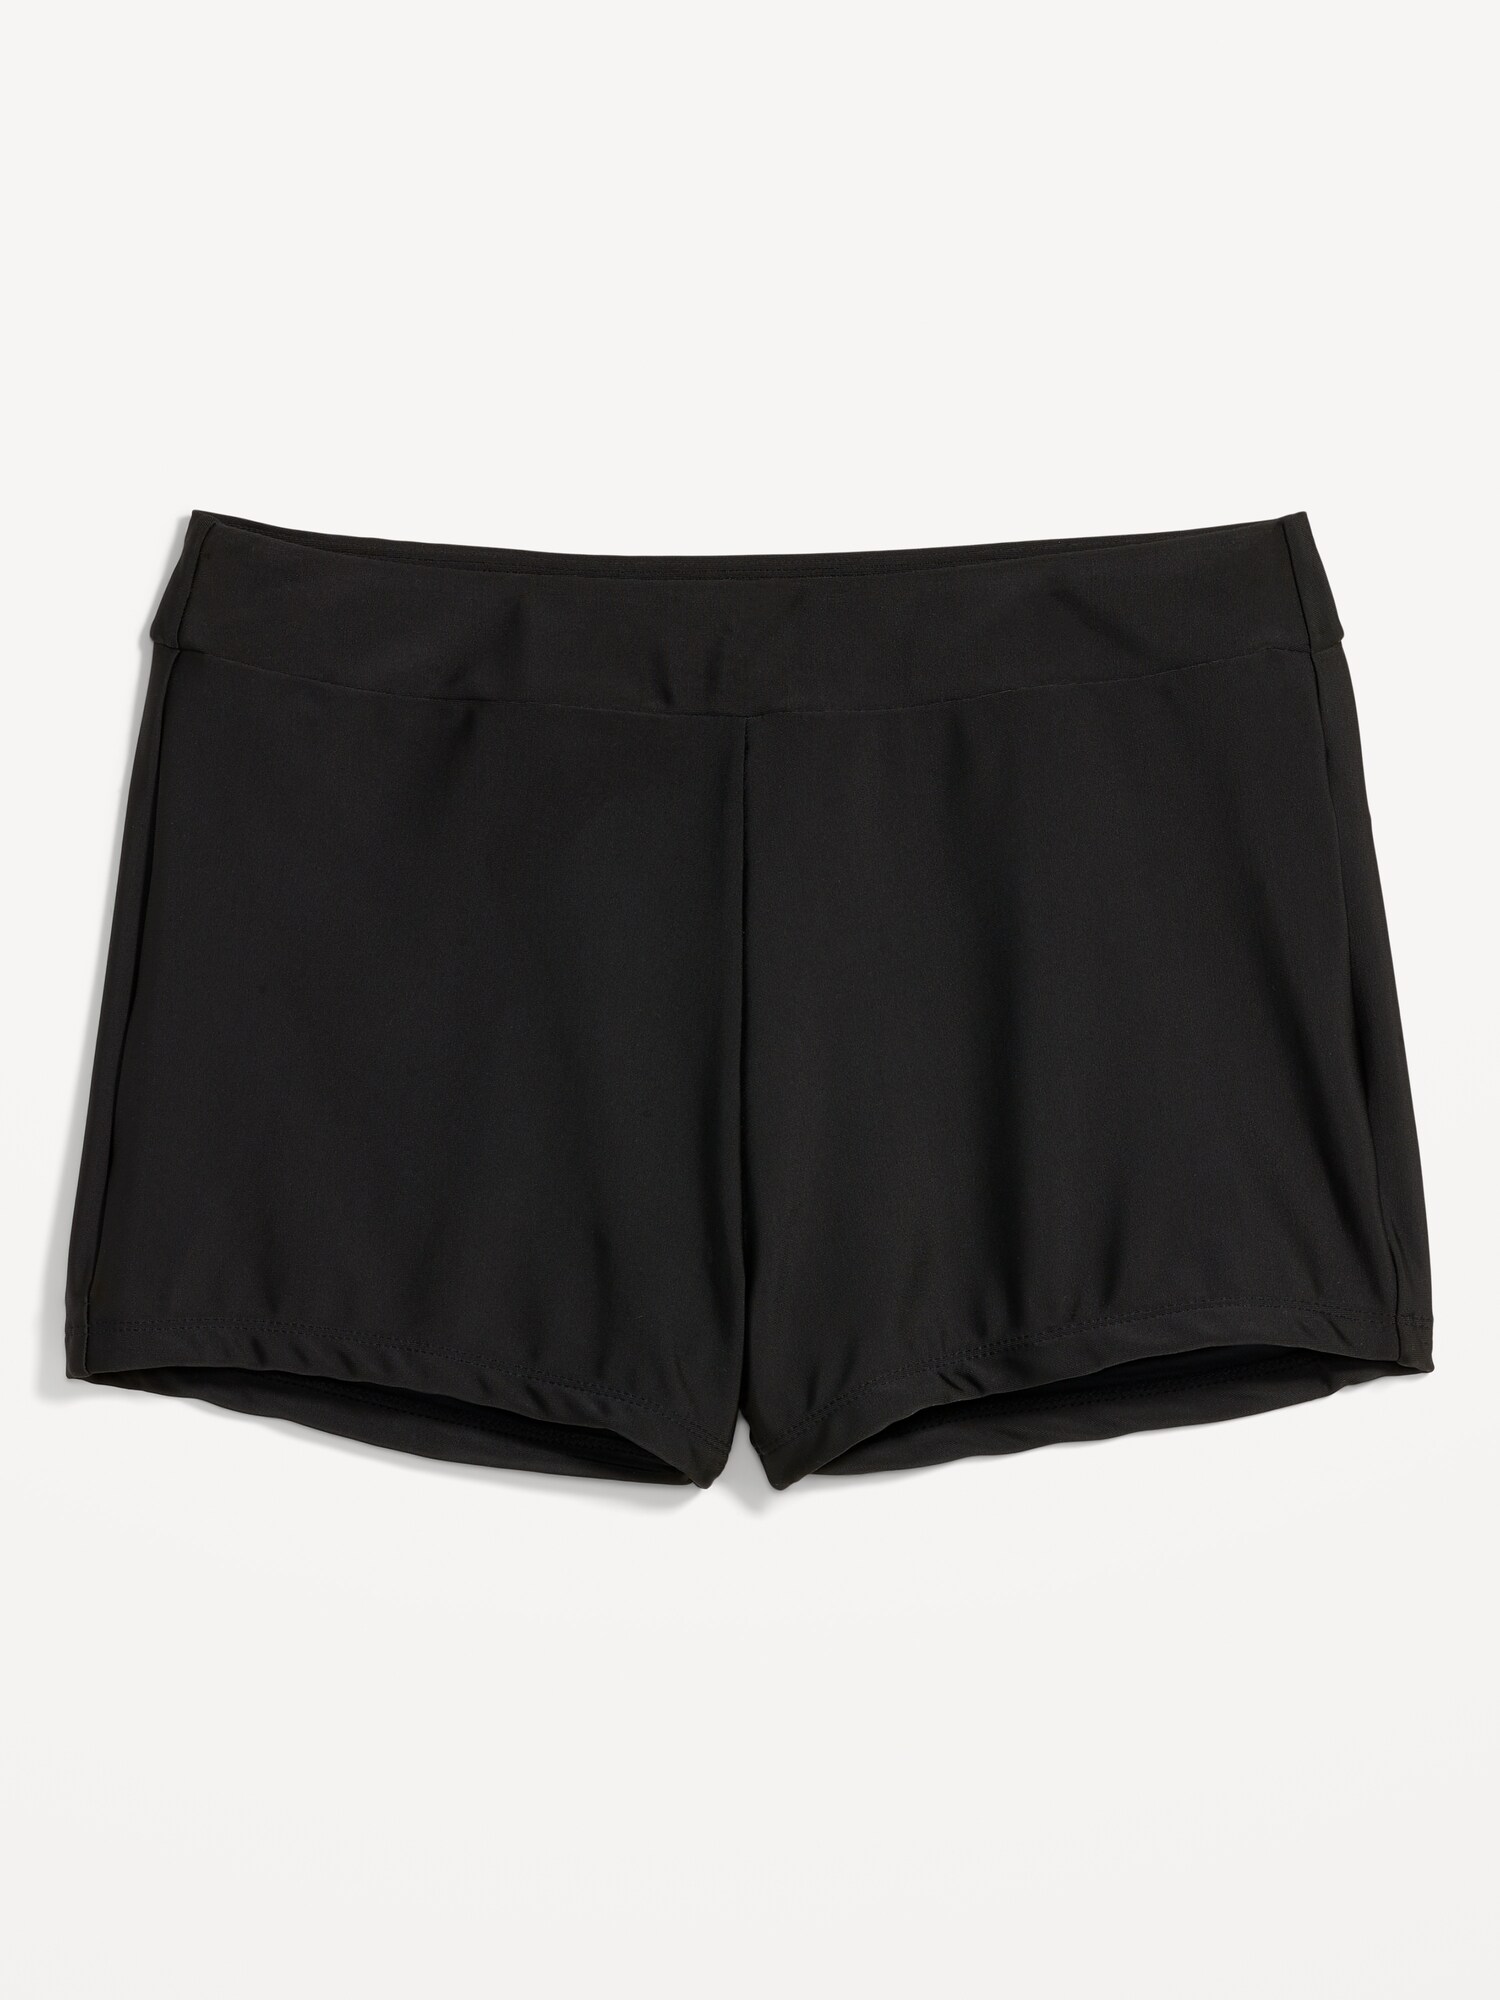 Danskin Boyshort Underwear - Set Of 3 in Black